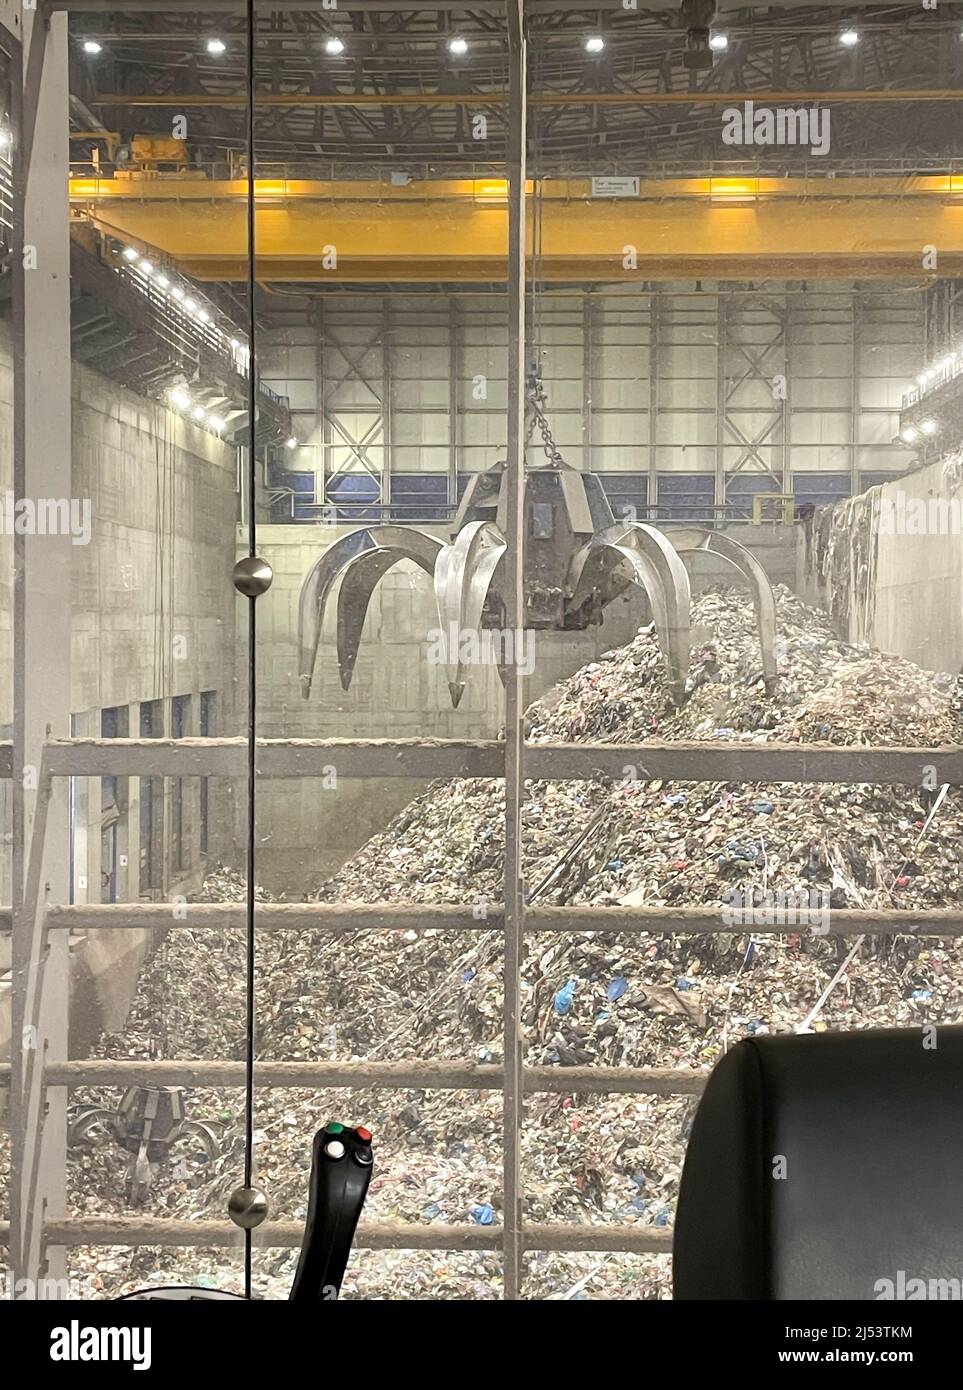 All'interno di un impianto di gestione dei rifiuti che combuca rifiuti per produrre elettricità, incenerimento dei rifiuti e impianto di produzione di energia, Cestino ad energia Foto Stock